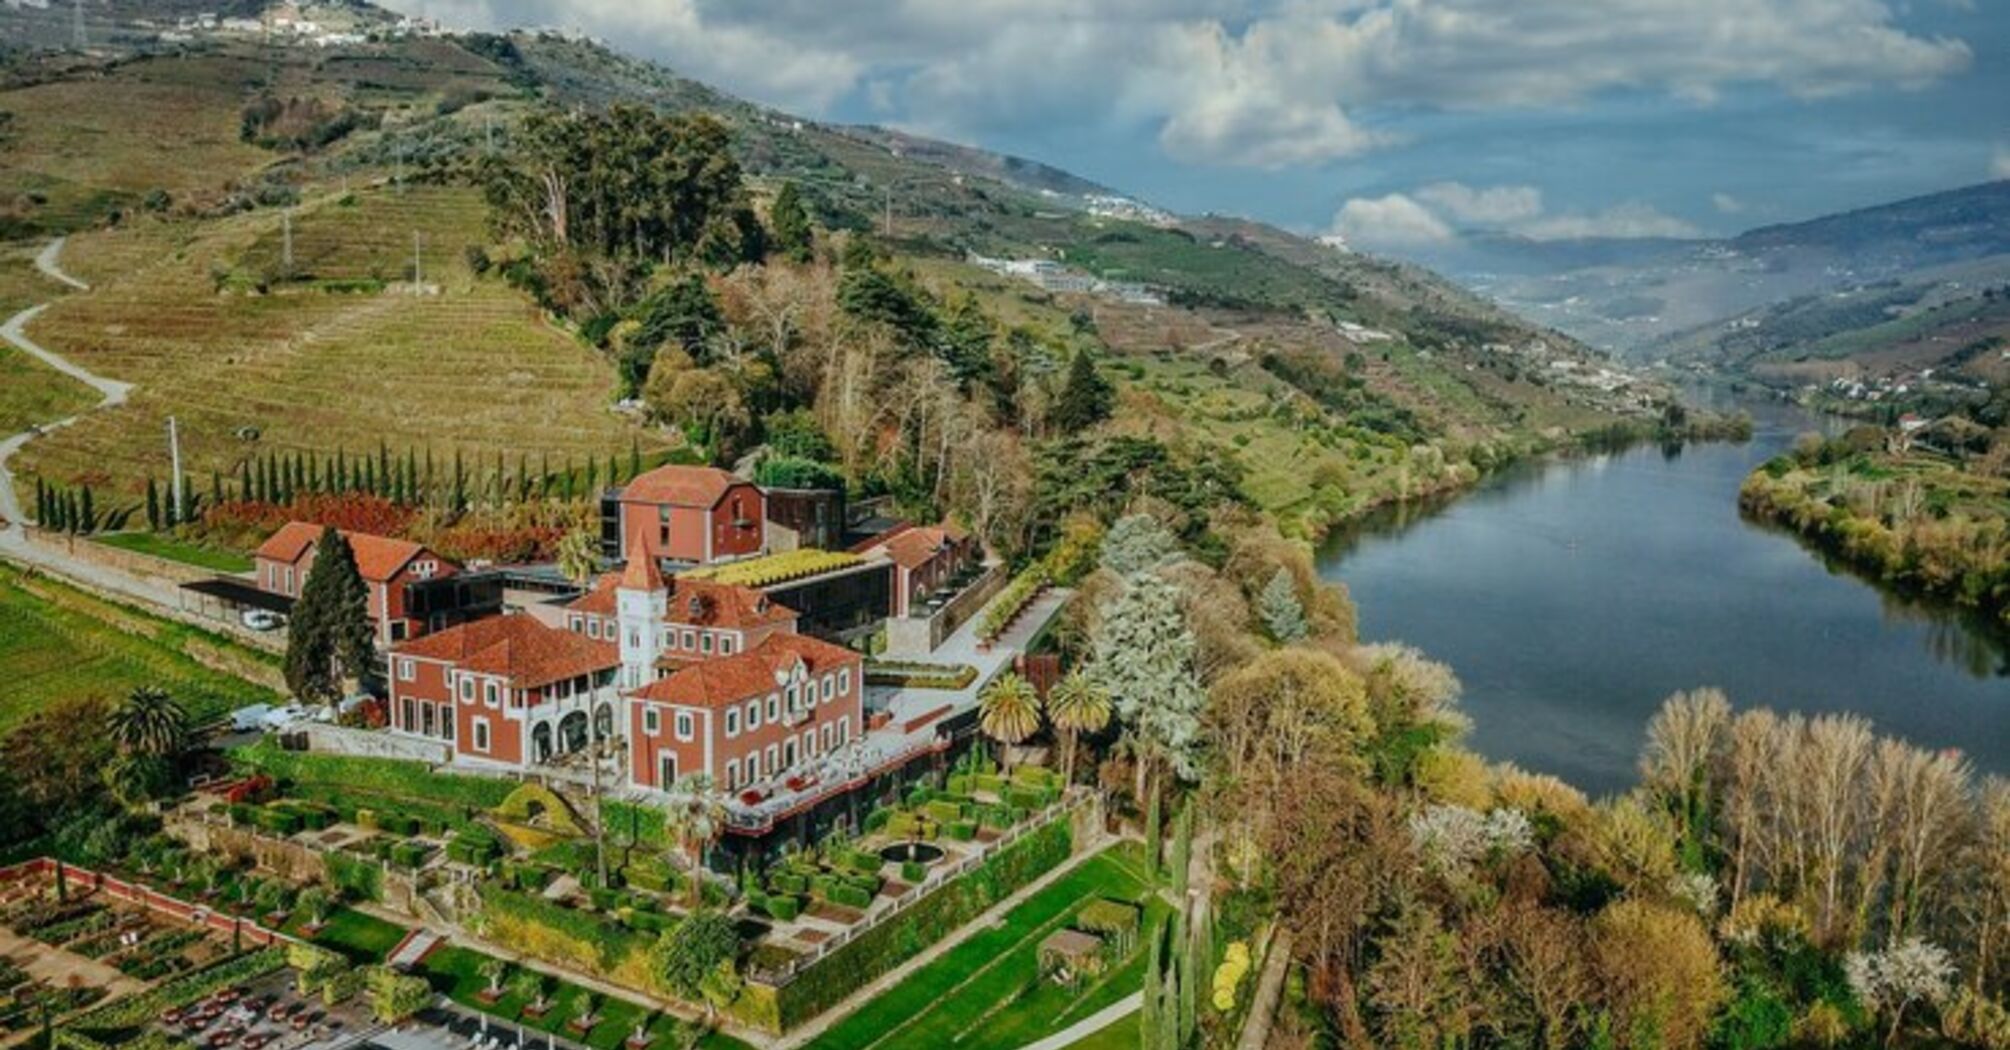 Georgia has received historic tourism revenue